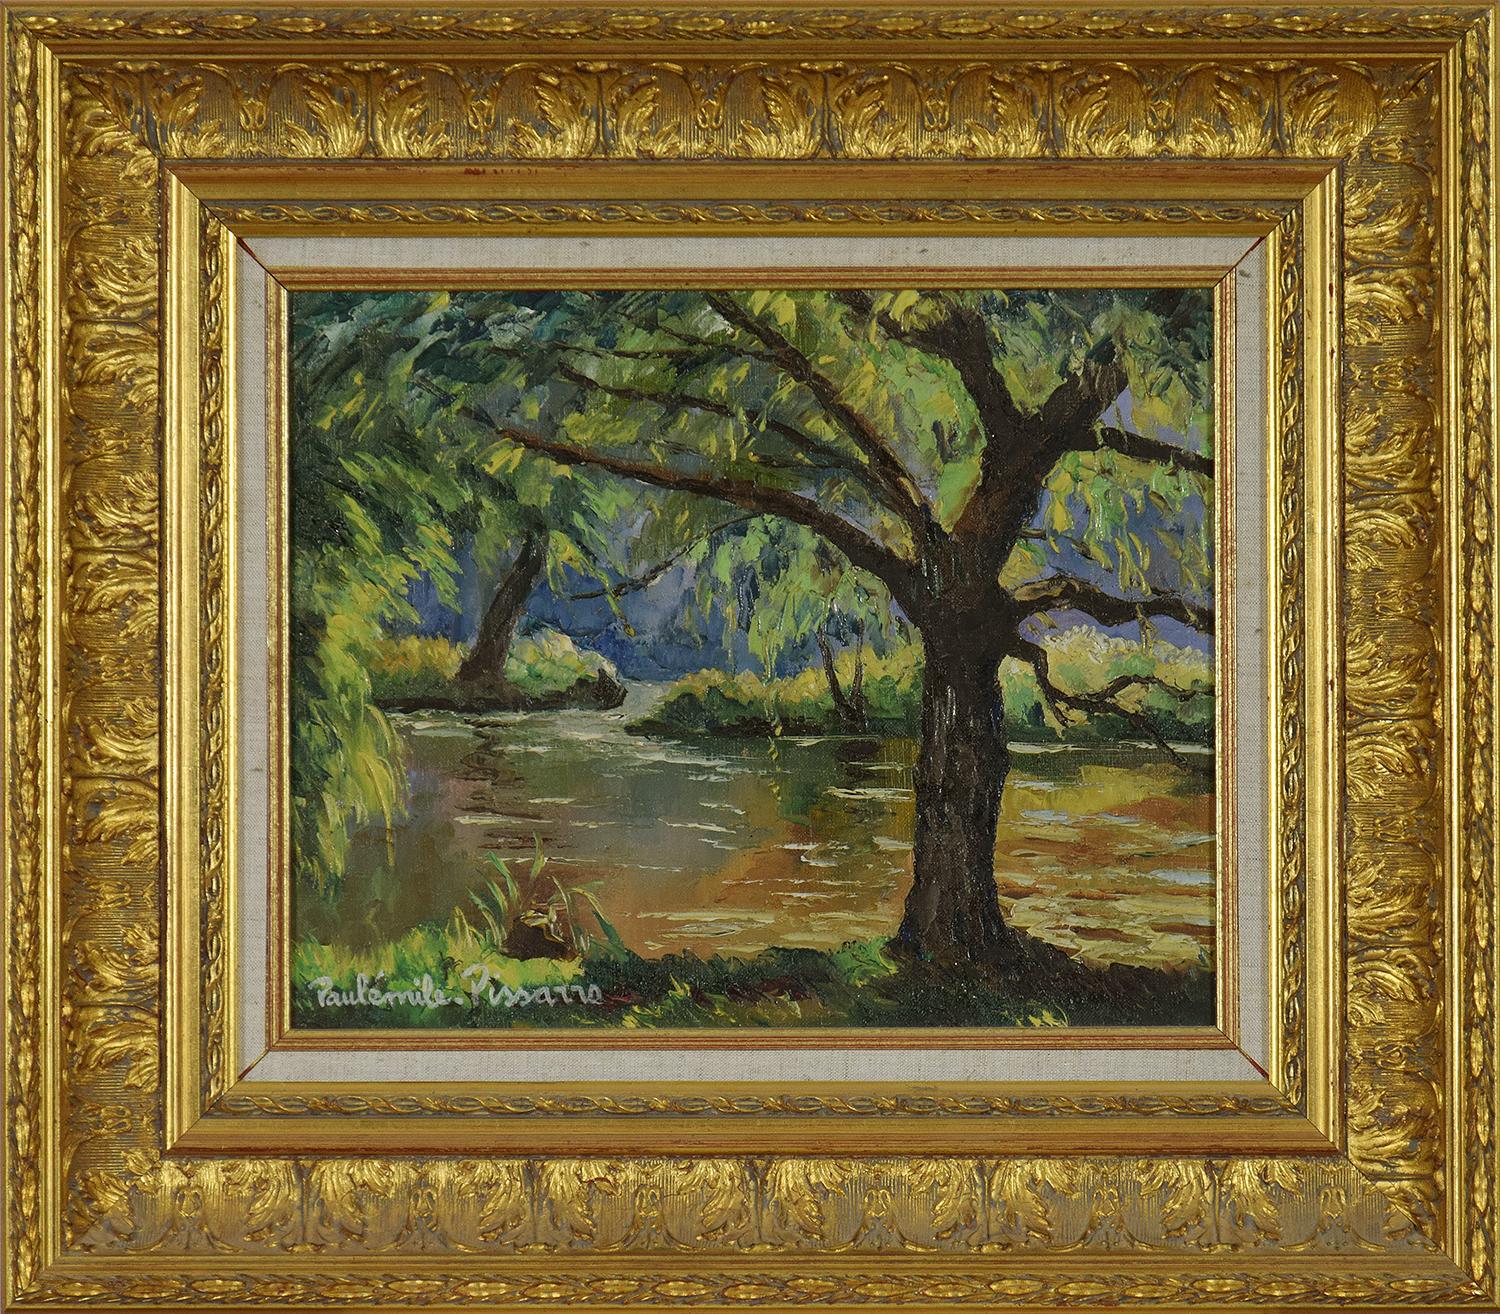 Paul Emile Pissarro Landscape Painting - Bord de l'Orne by Paulémile Pissarro - Post Impressionist landscape/waterscape